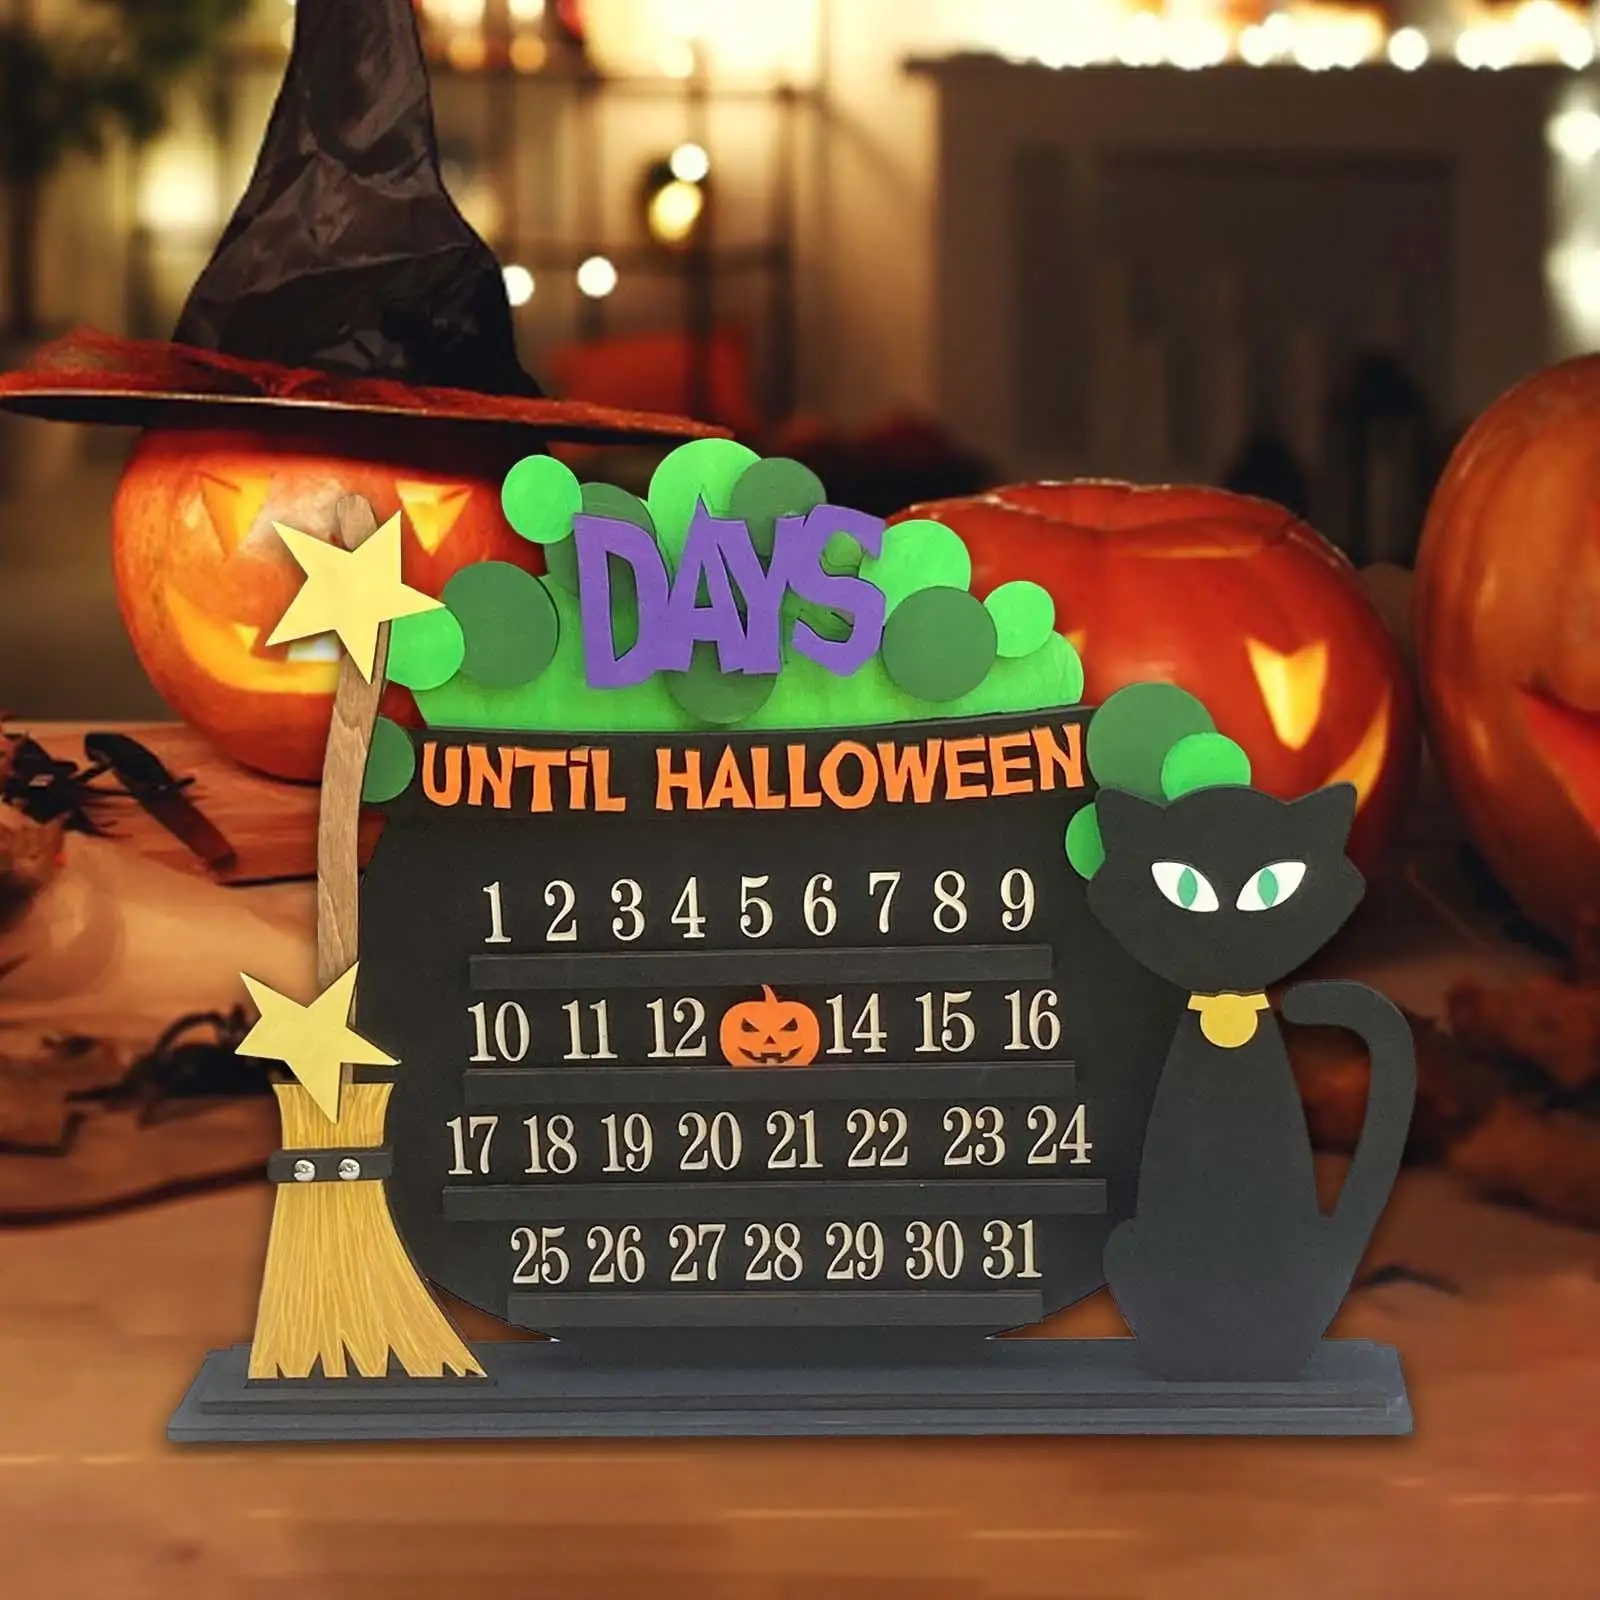 Medinis Helovino advento kalendorius 